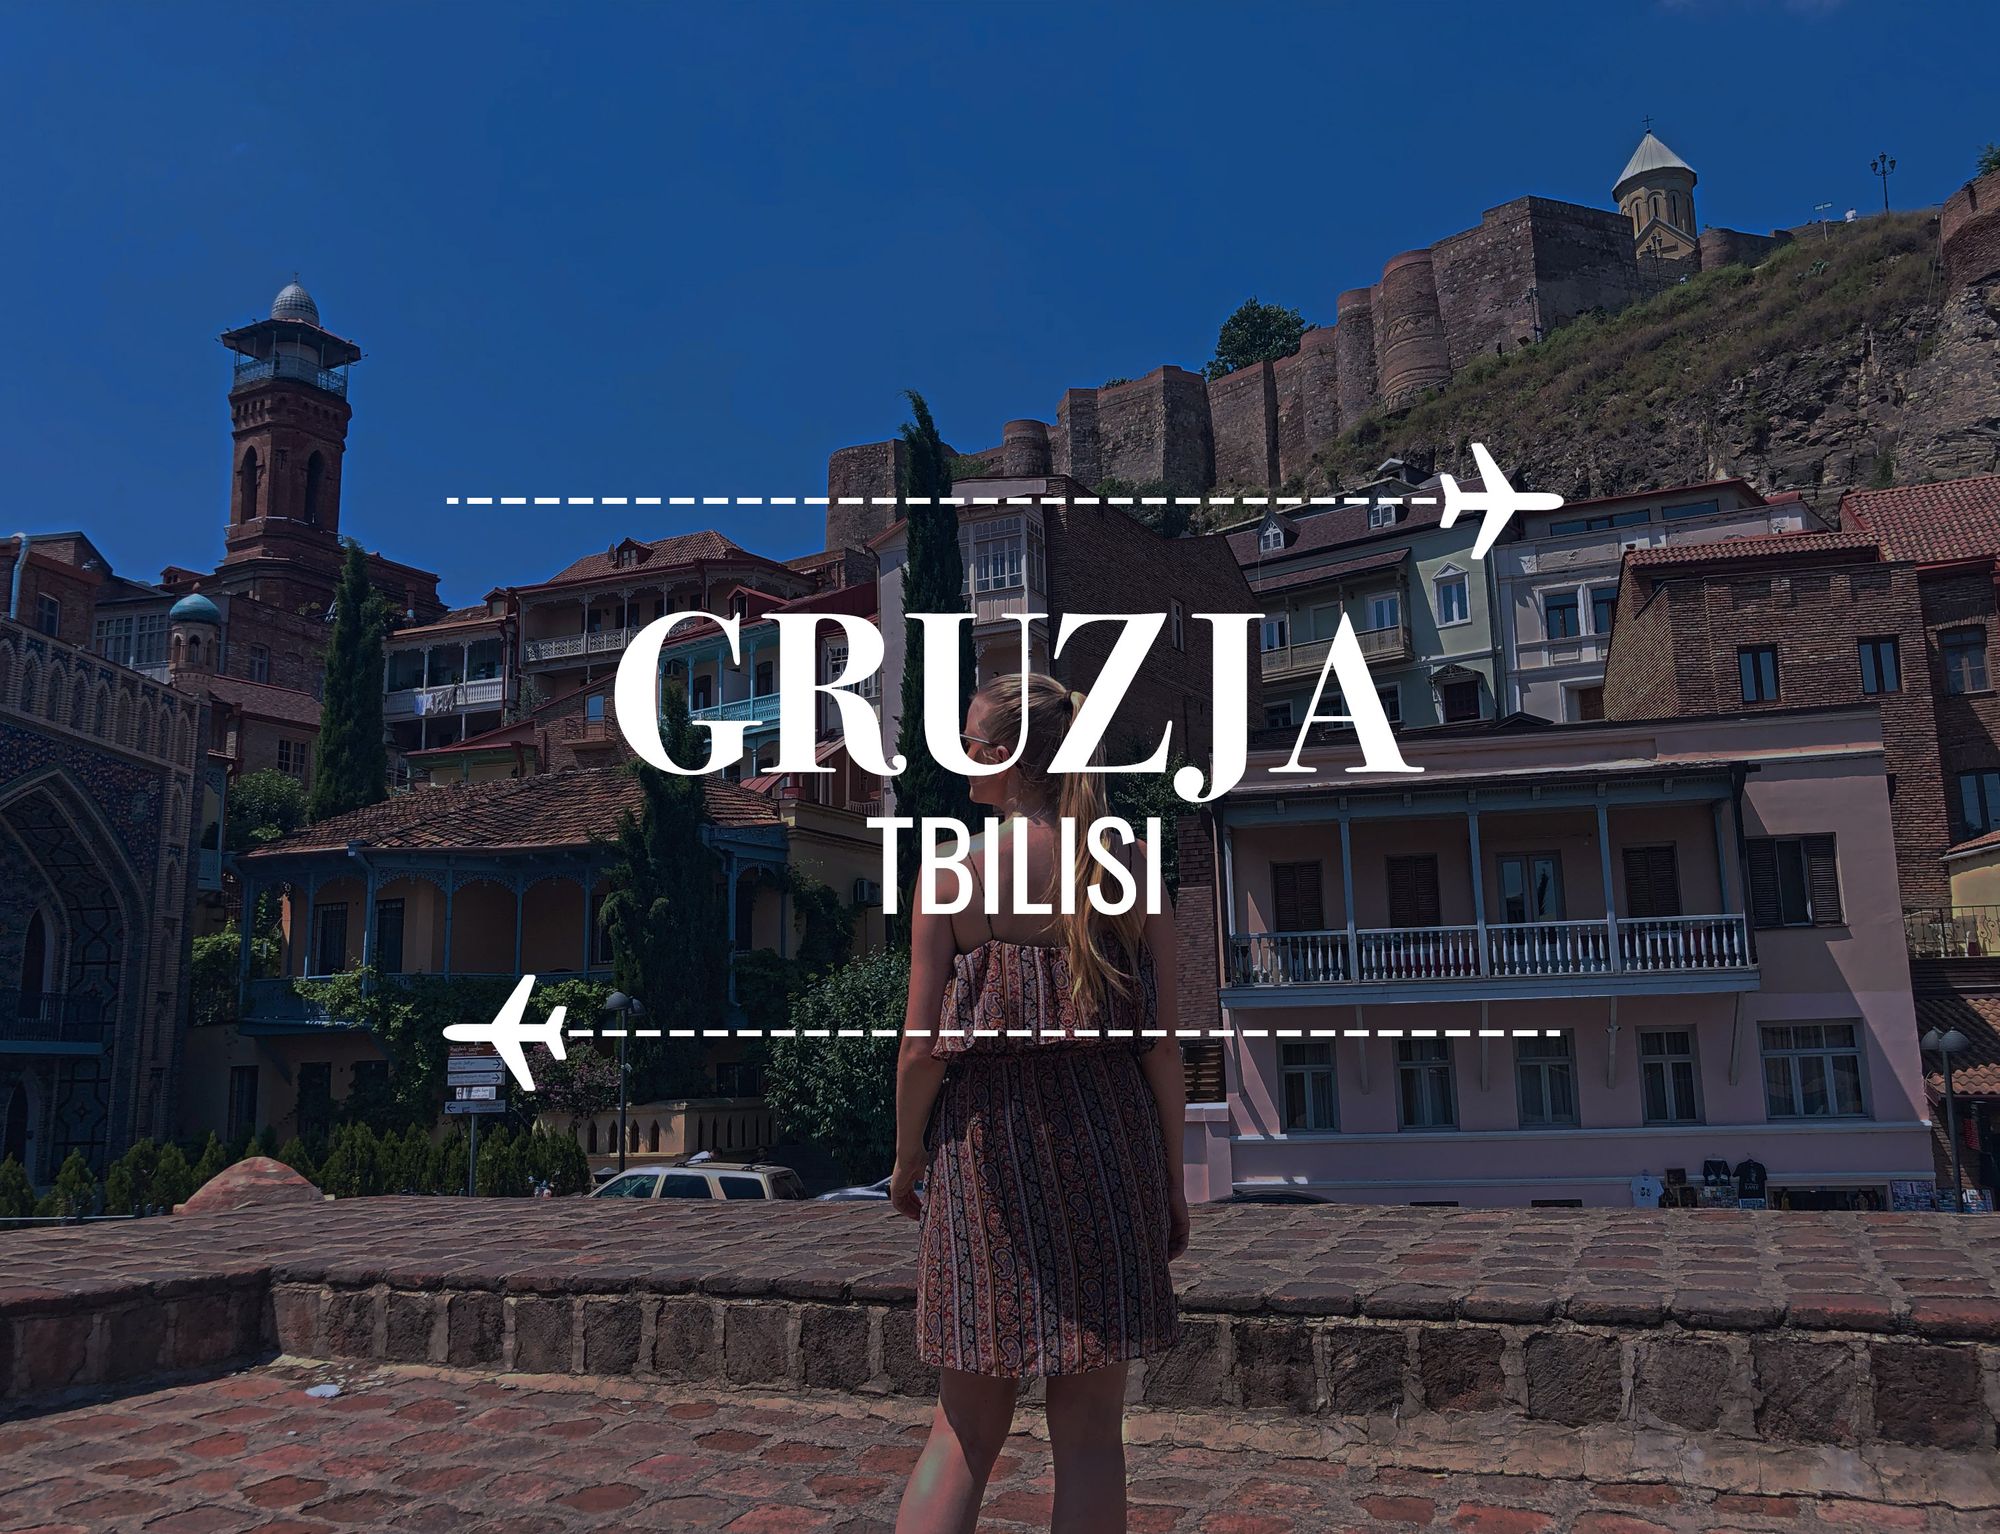 Gruzja - Tbilisi